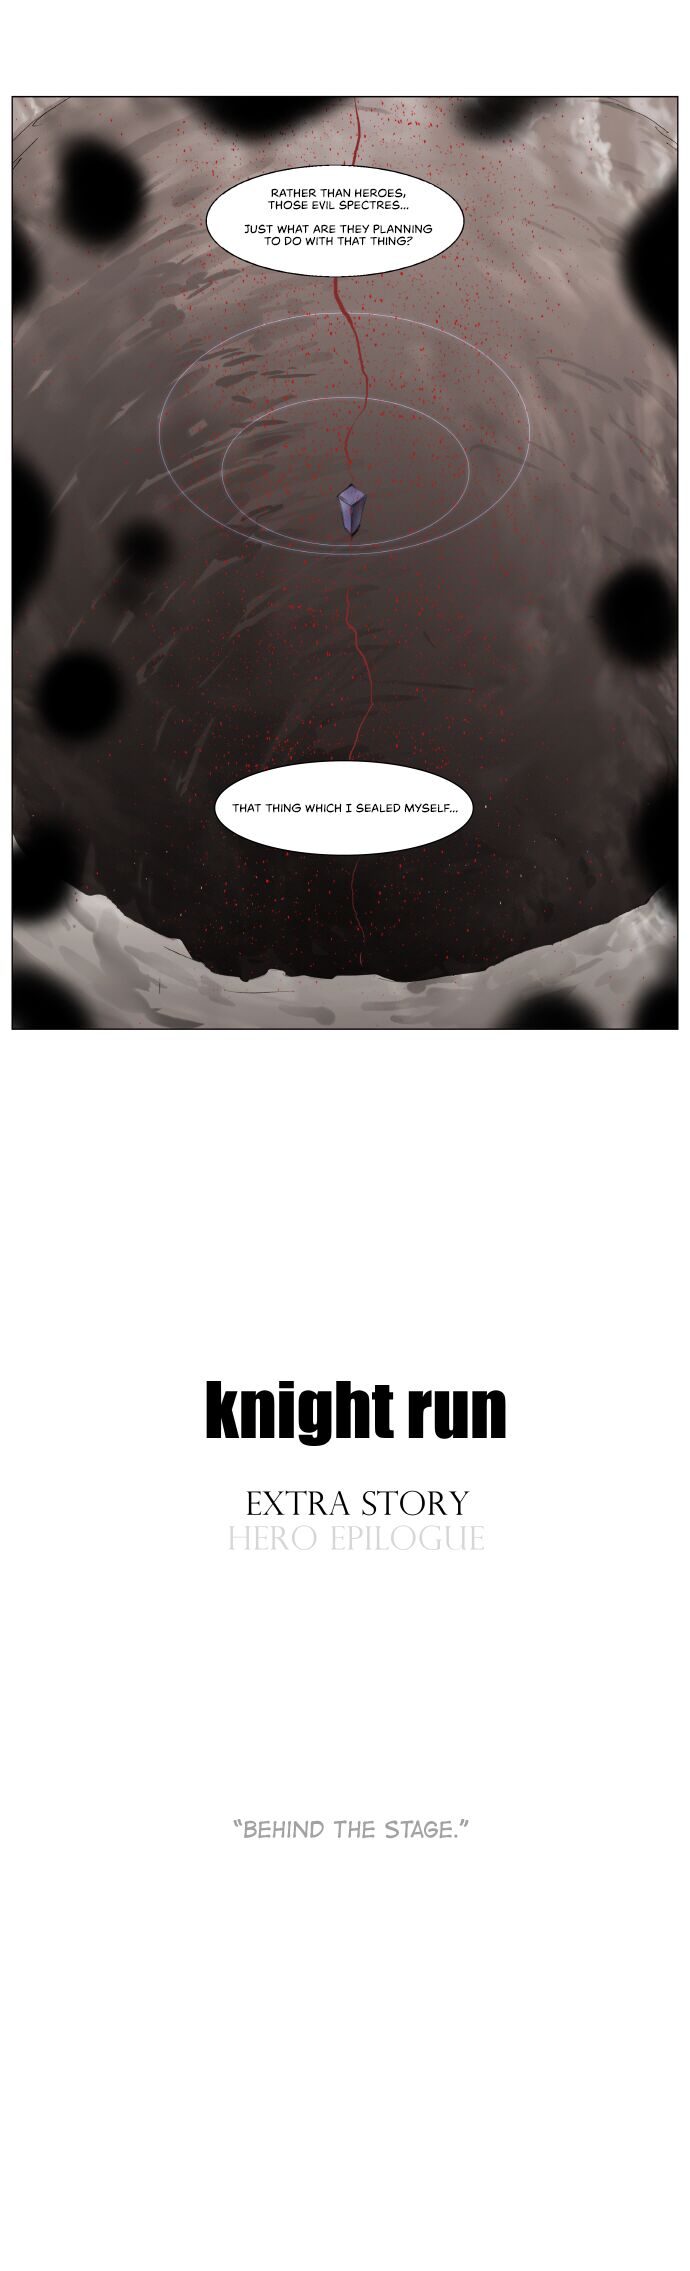 Knight Run 192 12